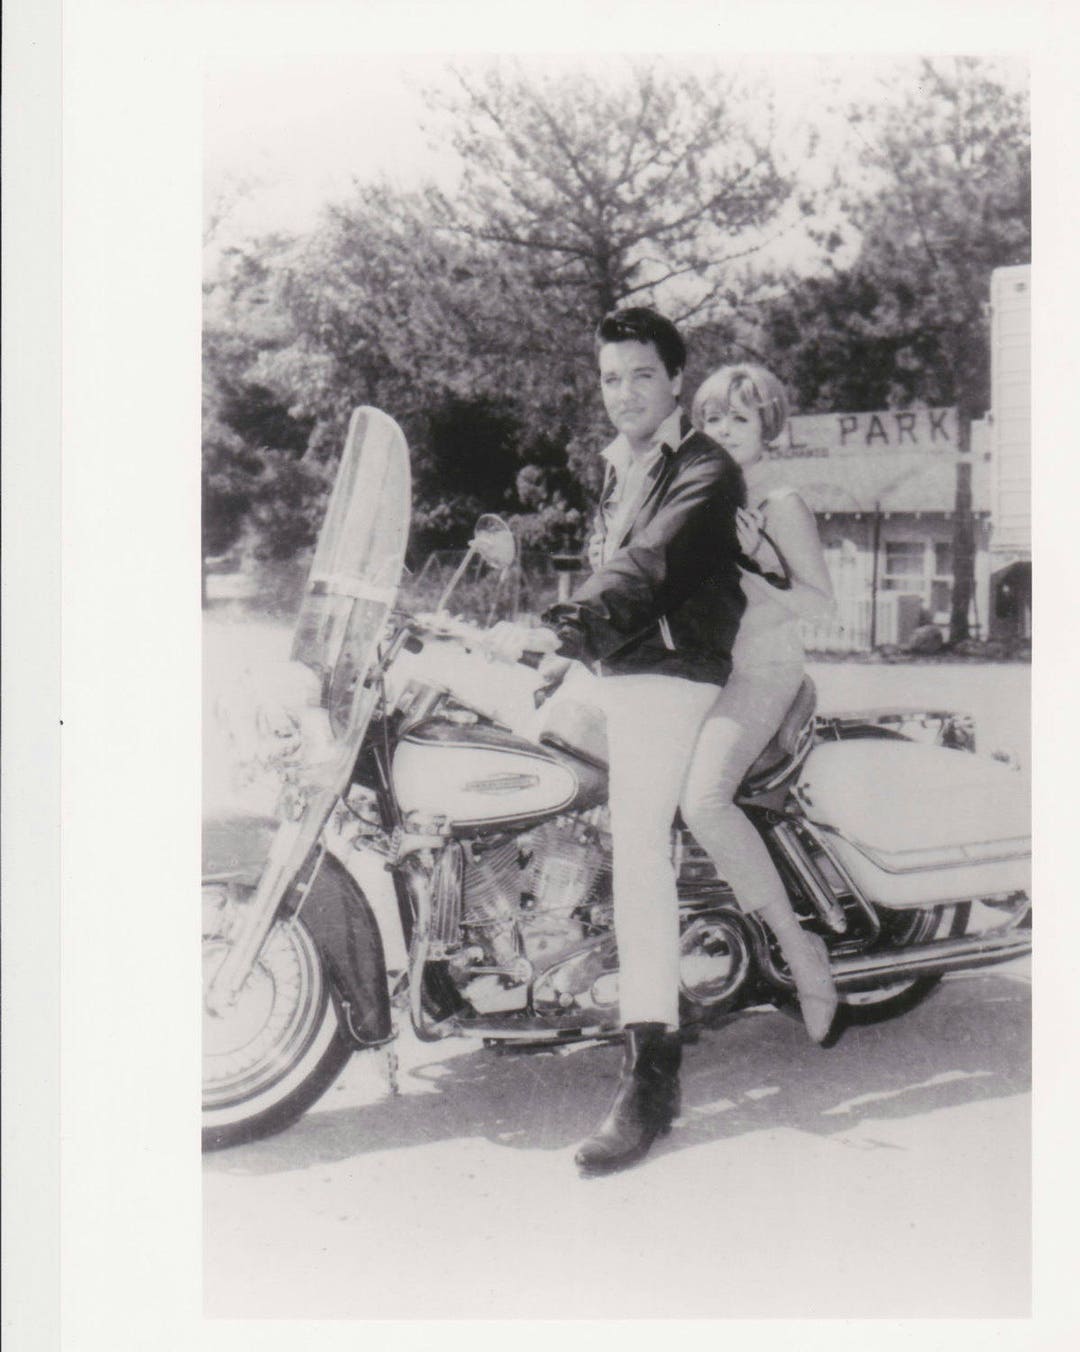 SPINOUT Photo Elvis Presley & Deborah Walley on Harley Motorcycle ...